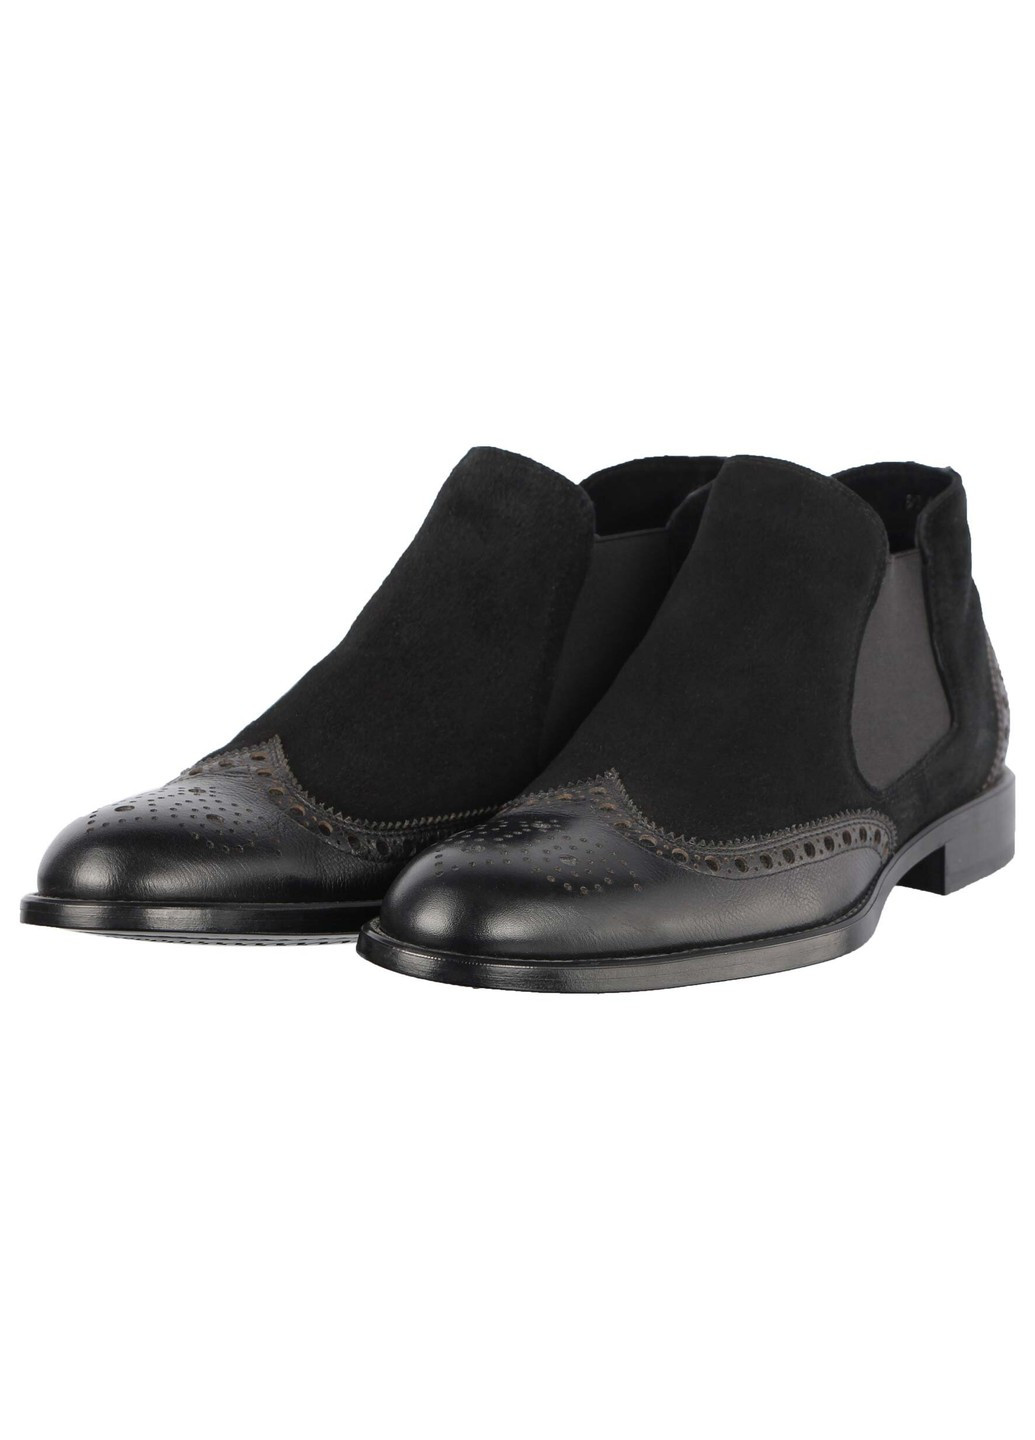 Черные осенние мужские ботинки классические 8250 Nord